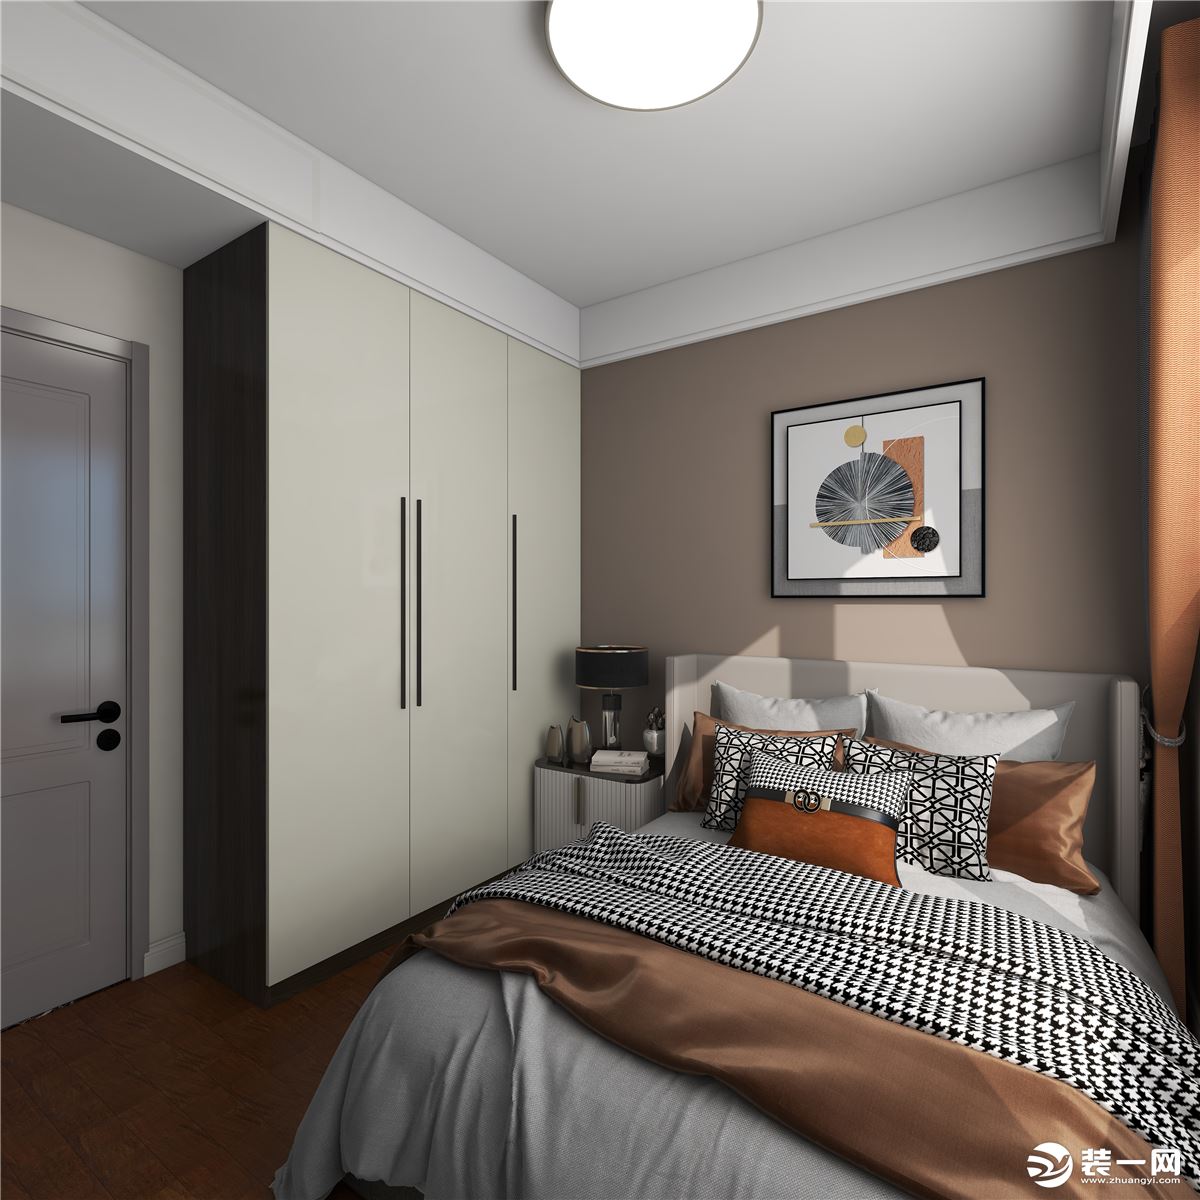 卧室作为休息的空间，舒适度为首要考虑，没有做繁杂的造型，白色皮质的床、棕色的木地板搭配沉稳大气。